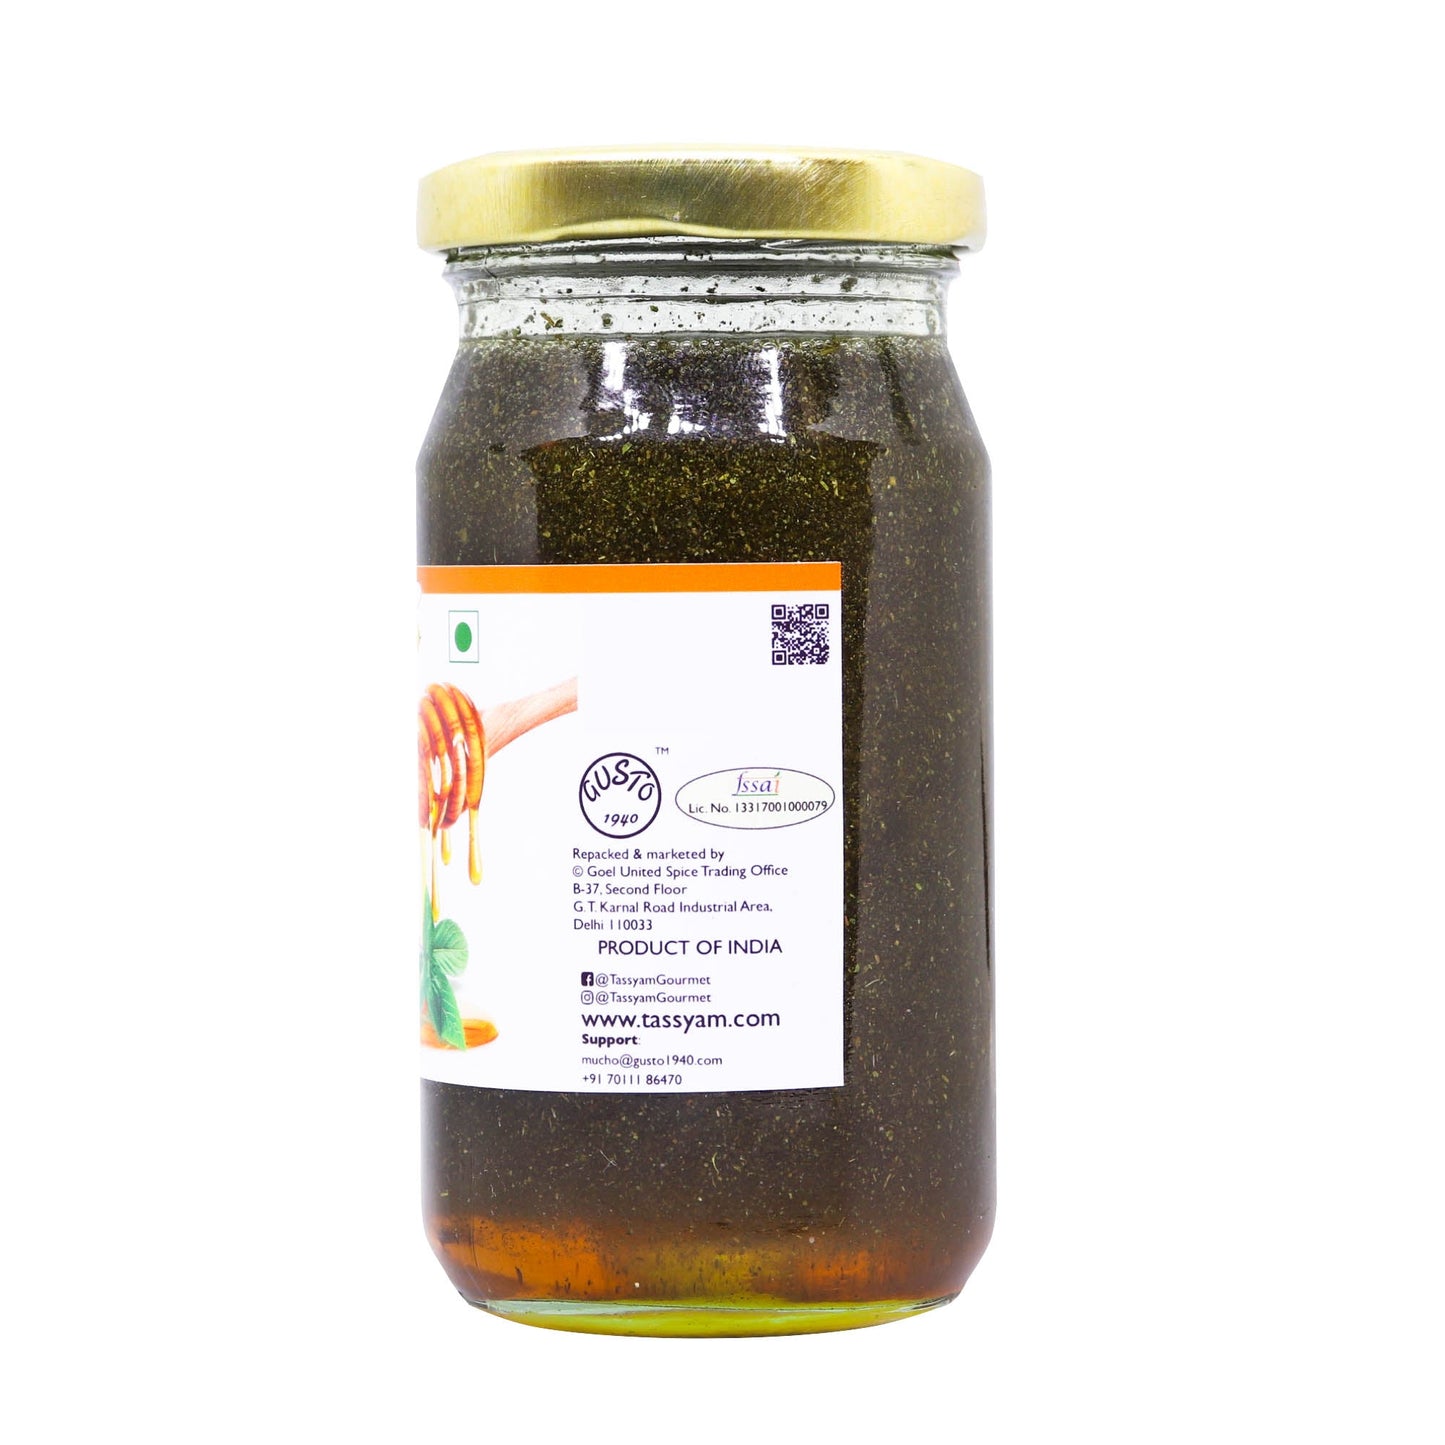 Wild Honey with Natural Dried Tulsi 250g - Tassyam Organics